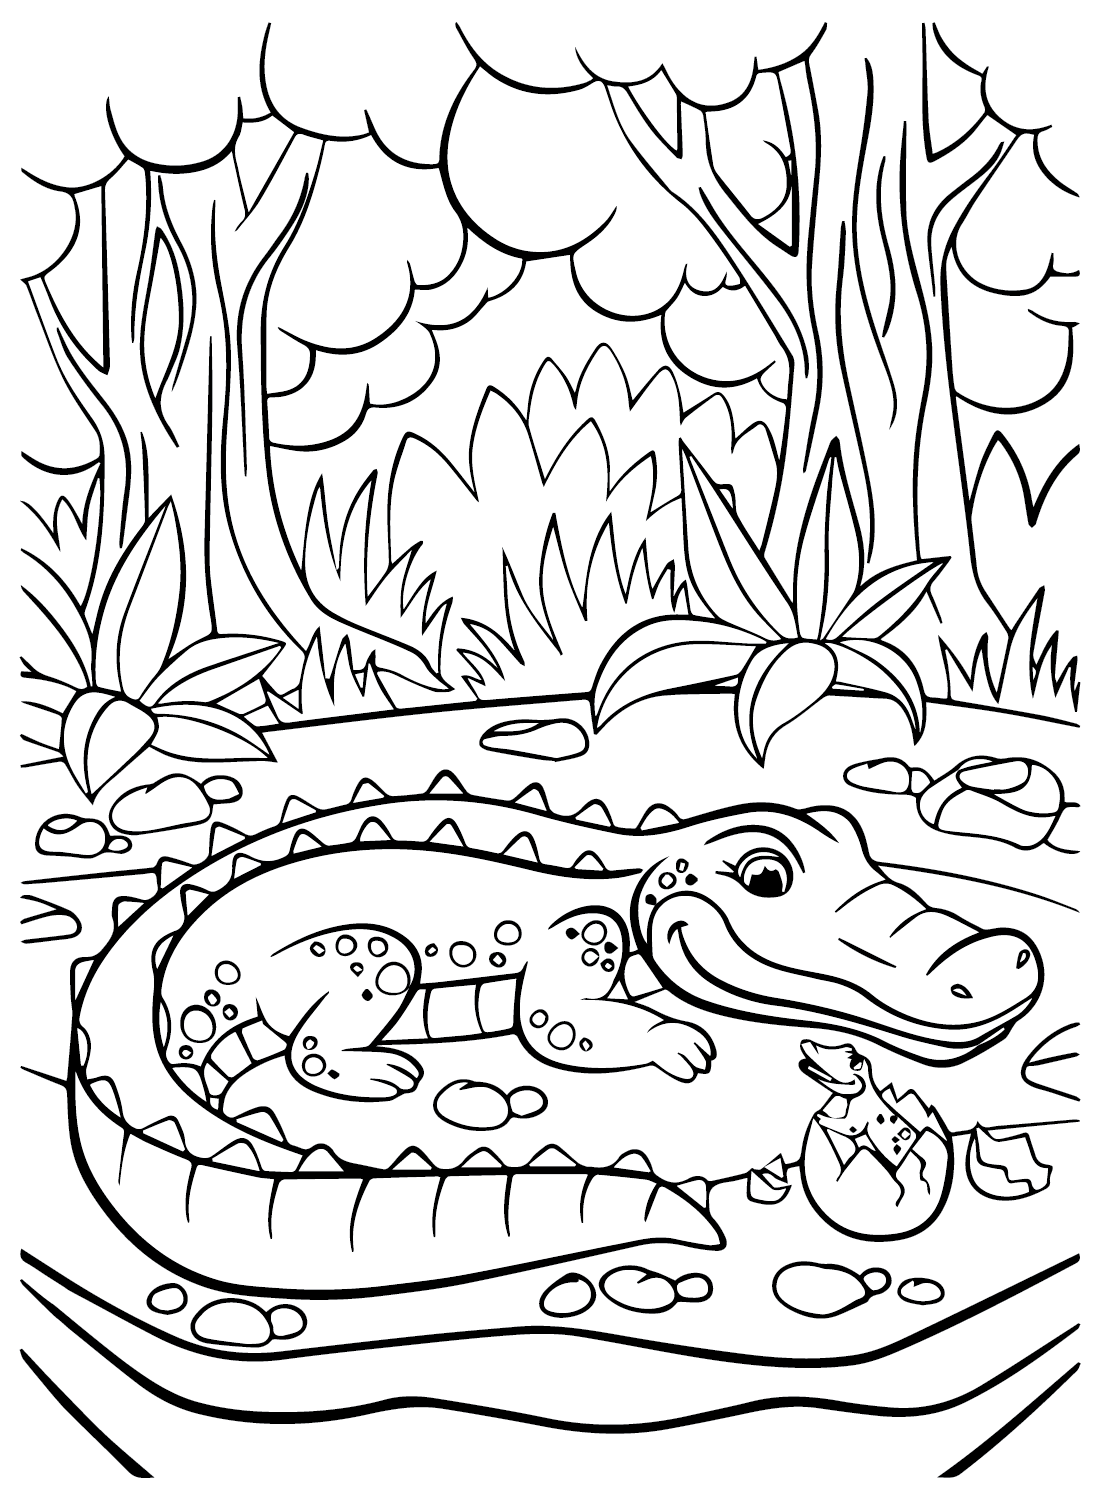 Изображения крокодилов для раскрашивания из Crocodile